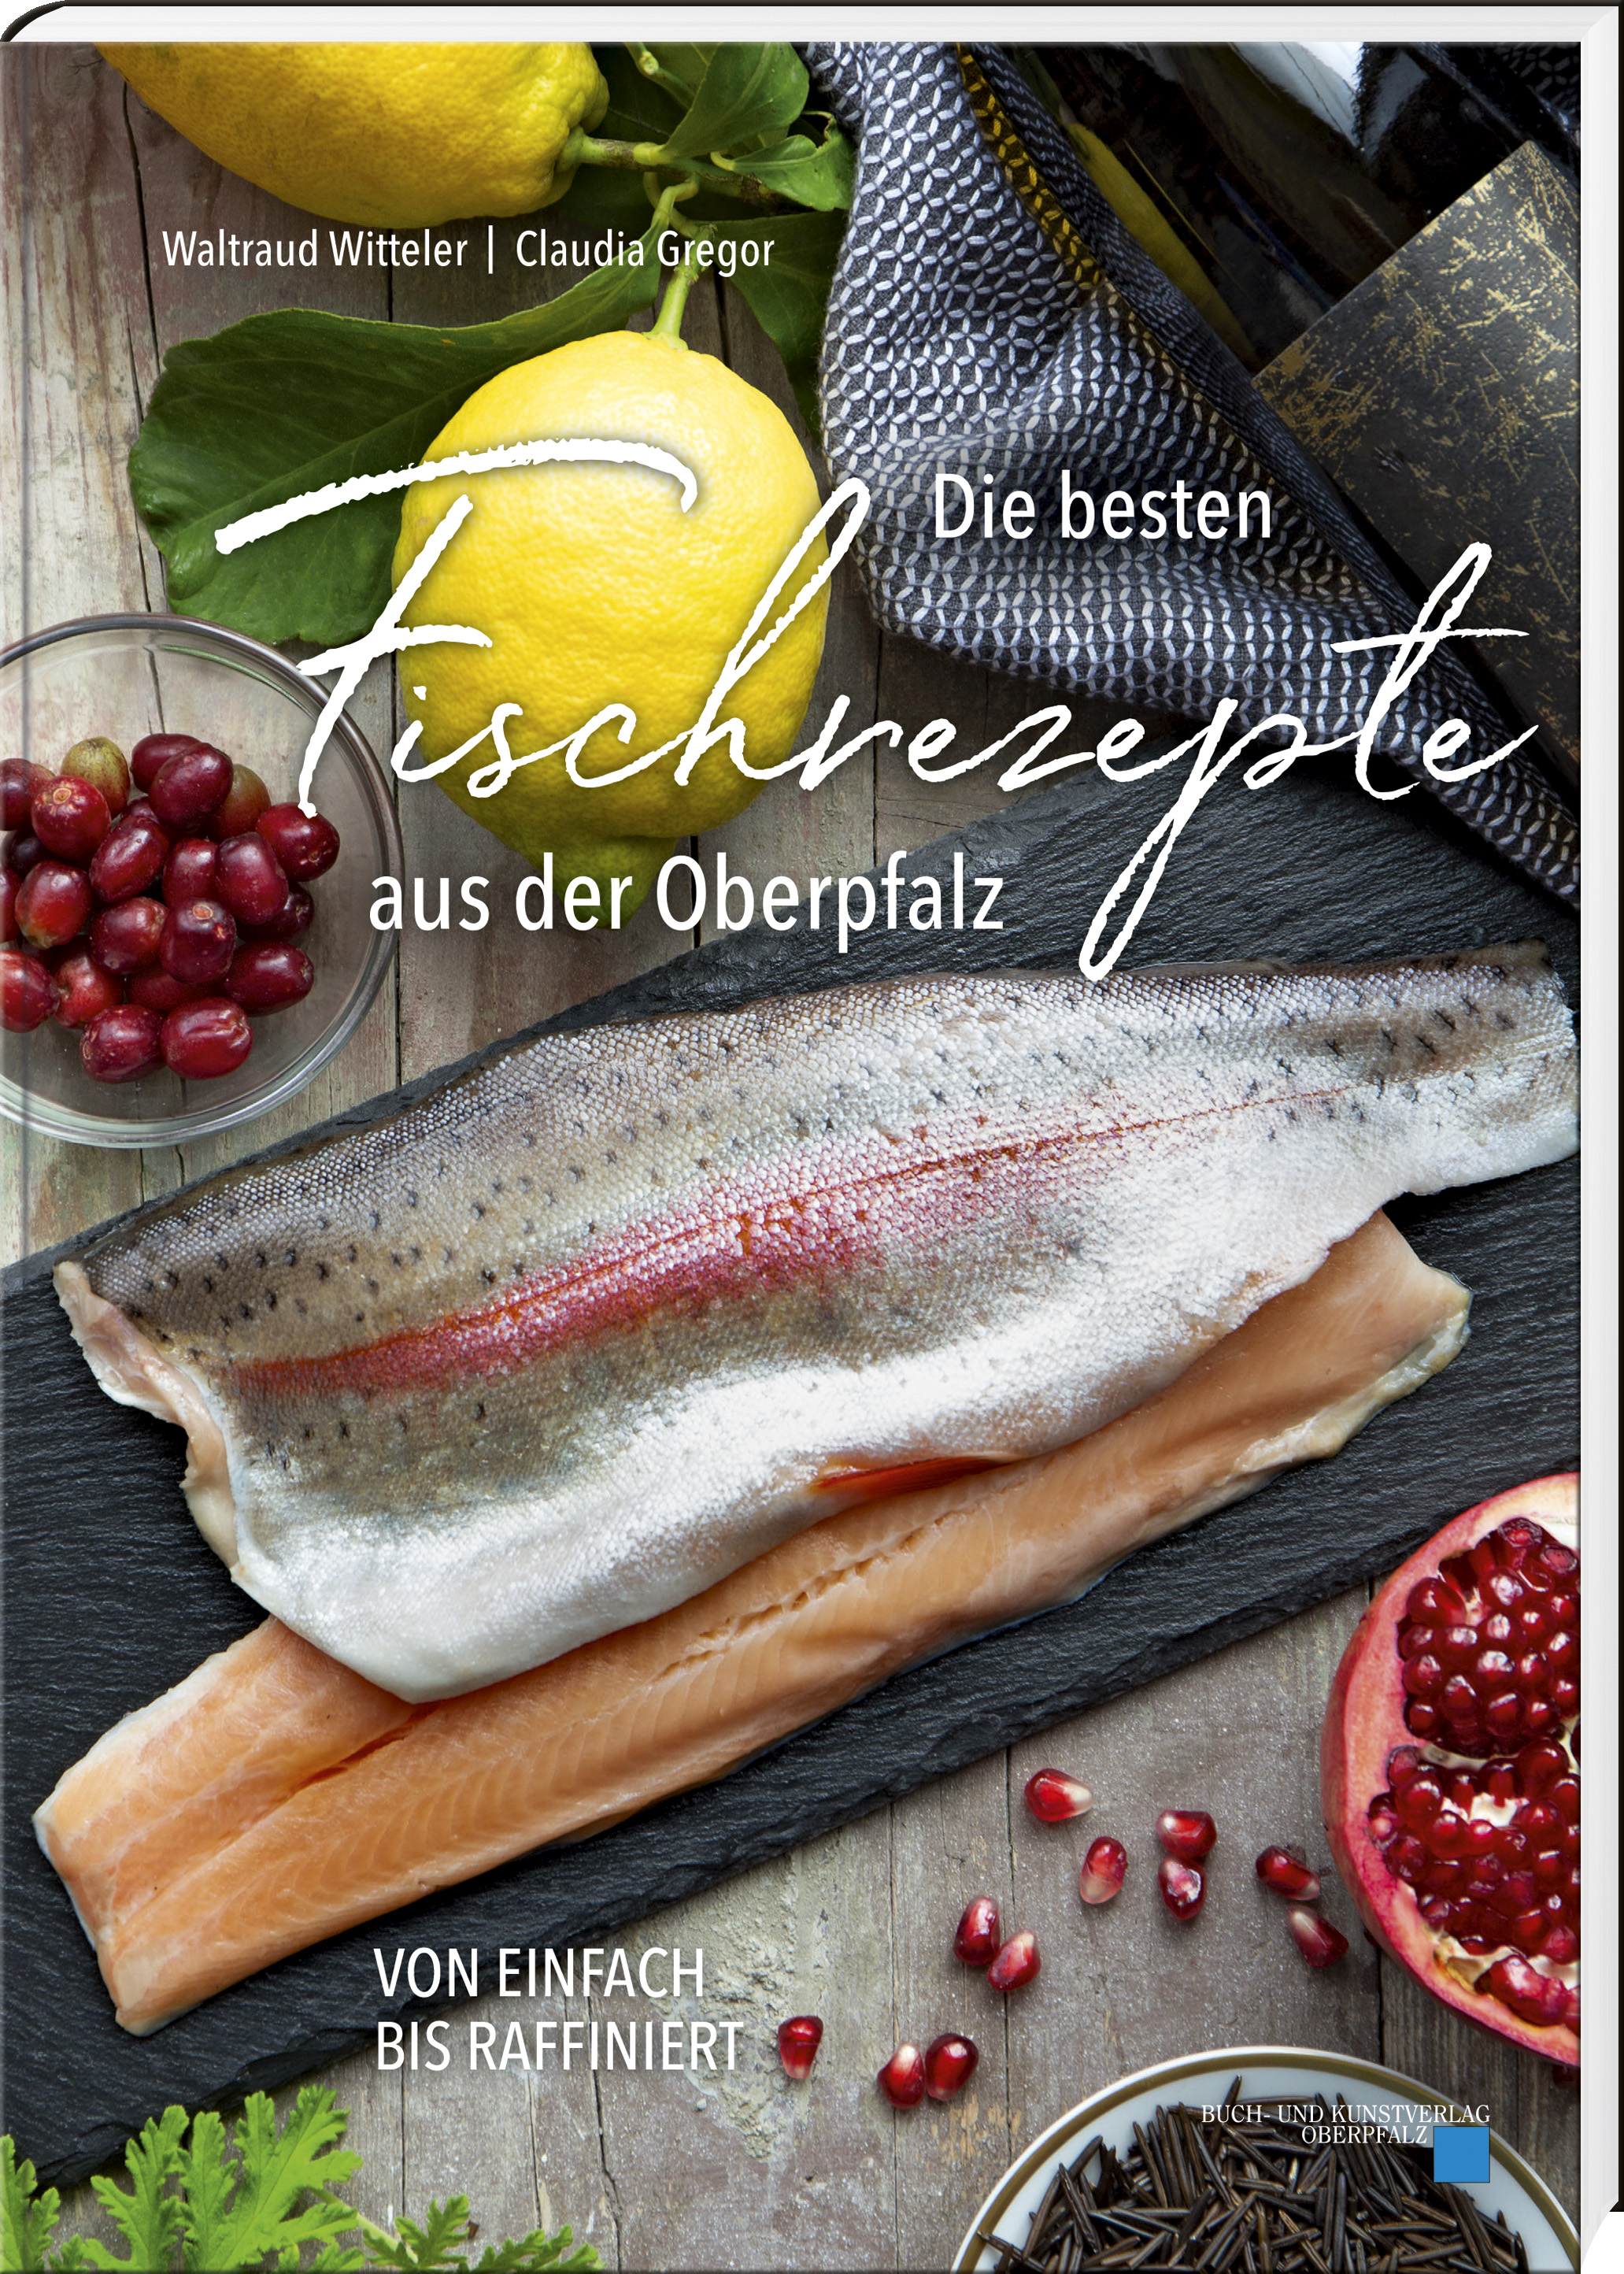 Waltraud Witteler | Claudia Gregor - Die besten Fischrezepte aus der Oberpfalz